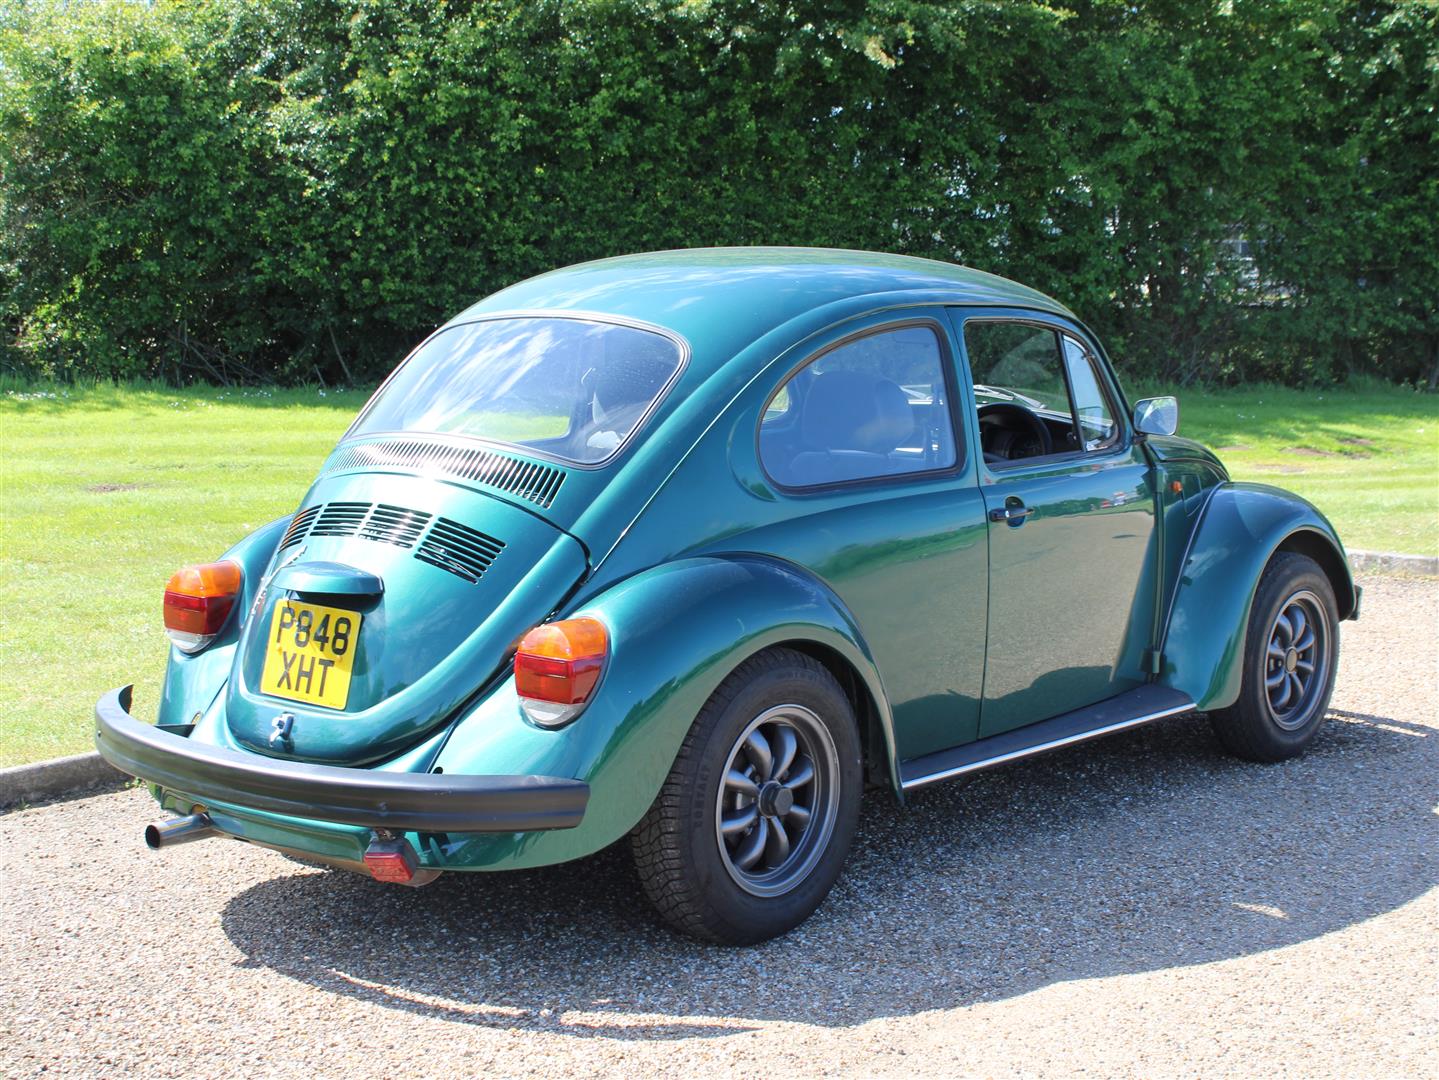 1997 VW Beetle 1600 - Image 7 of 18